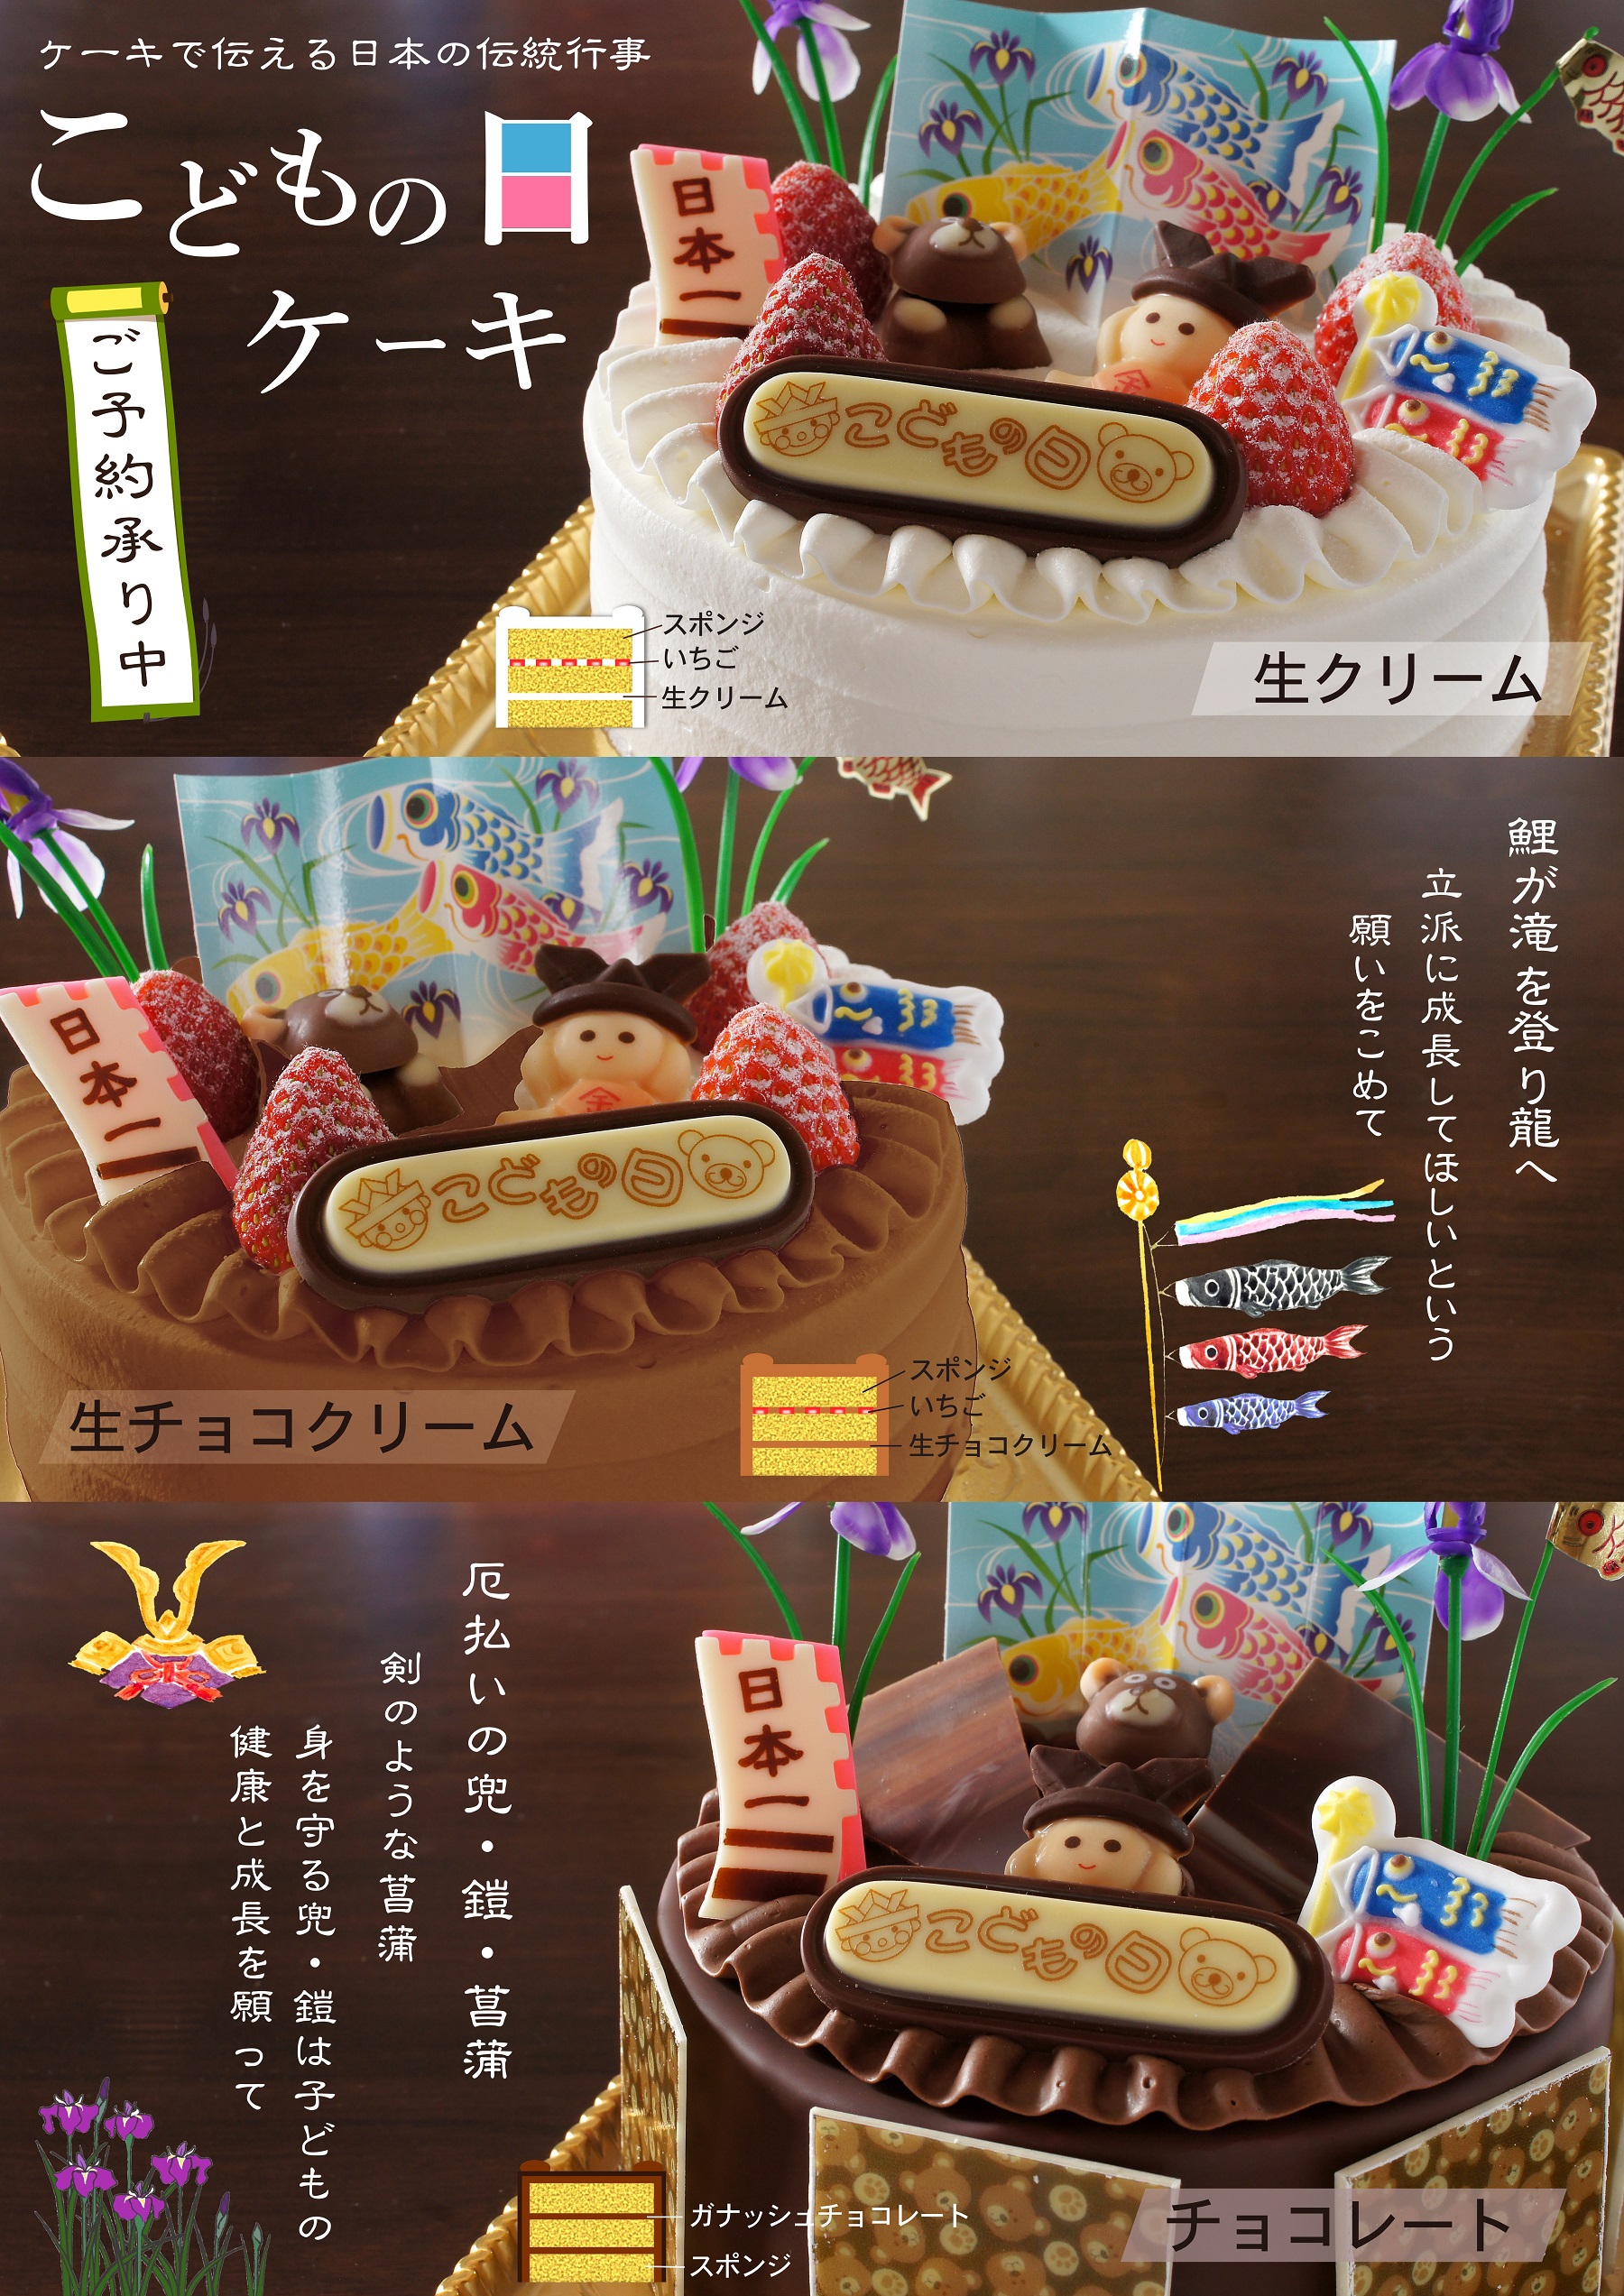 こどもの日のお祝いケーキ 野上菓子舗